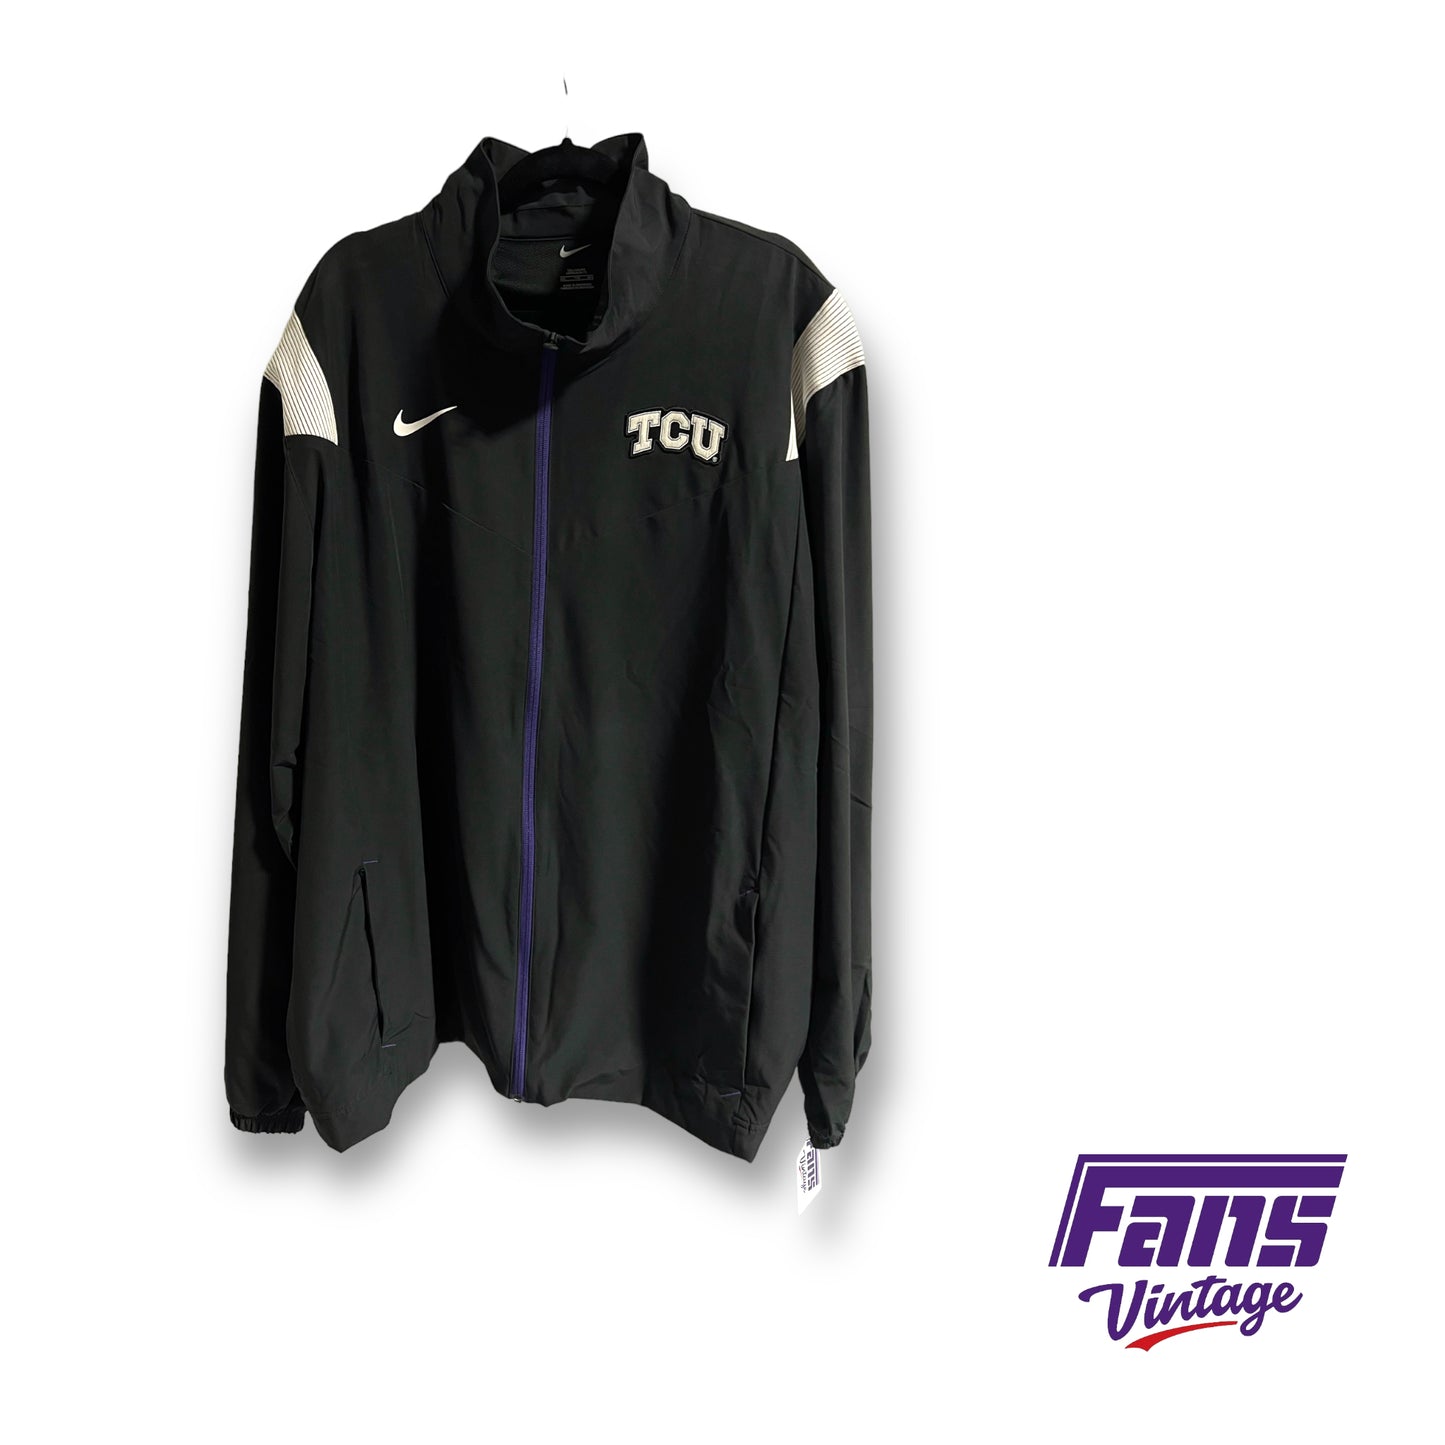 Nike TCU team issued premium lightweight jacket